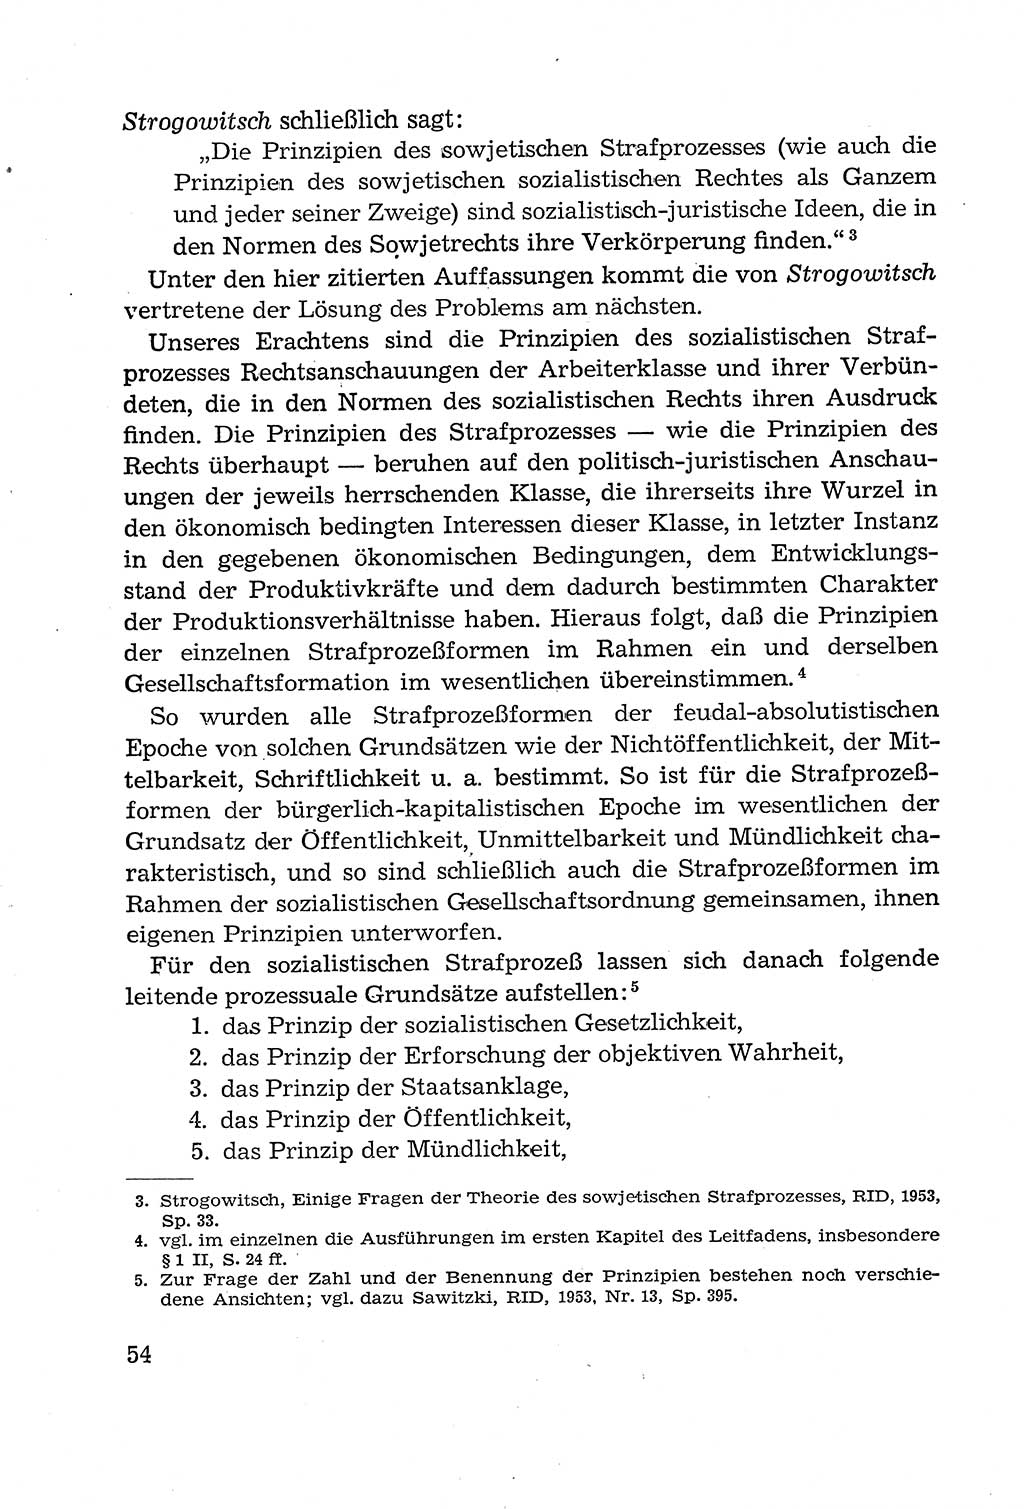 Leitfaden des Strafprozeßrechts der Deutschen Demokratischen Republik (DDR) 1959, Seite 54 (LF StPR DDR 1959, S. 54)